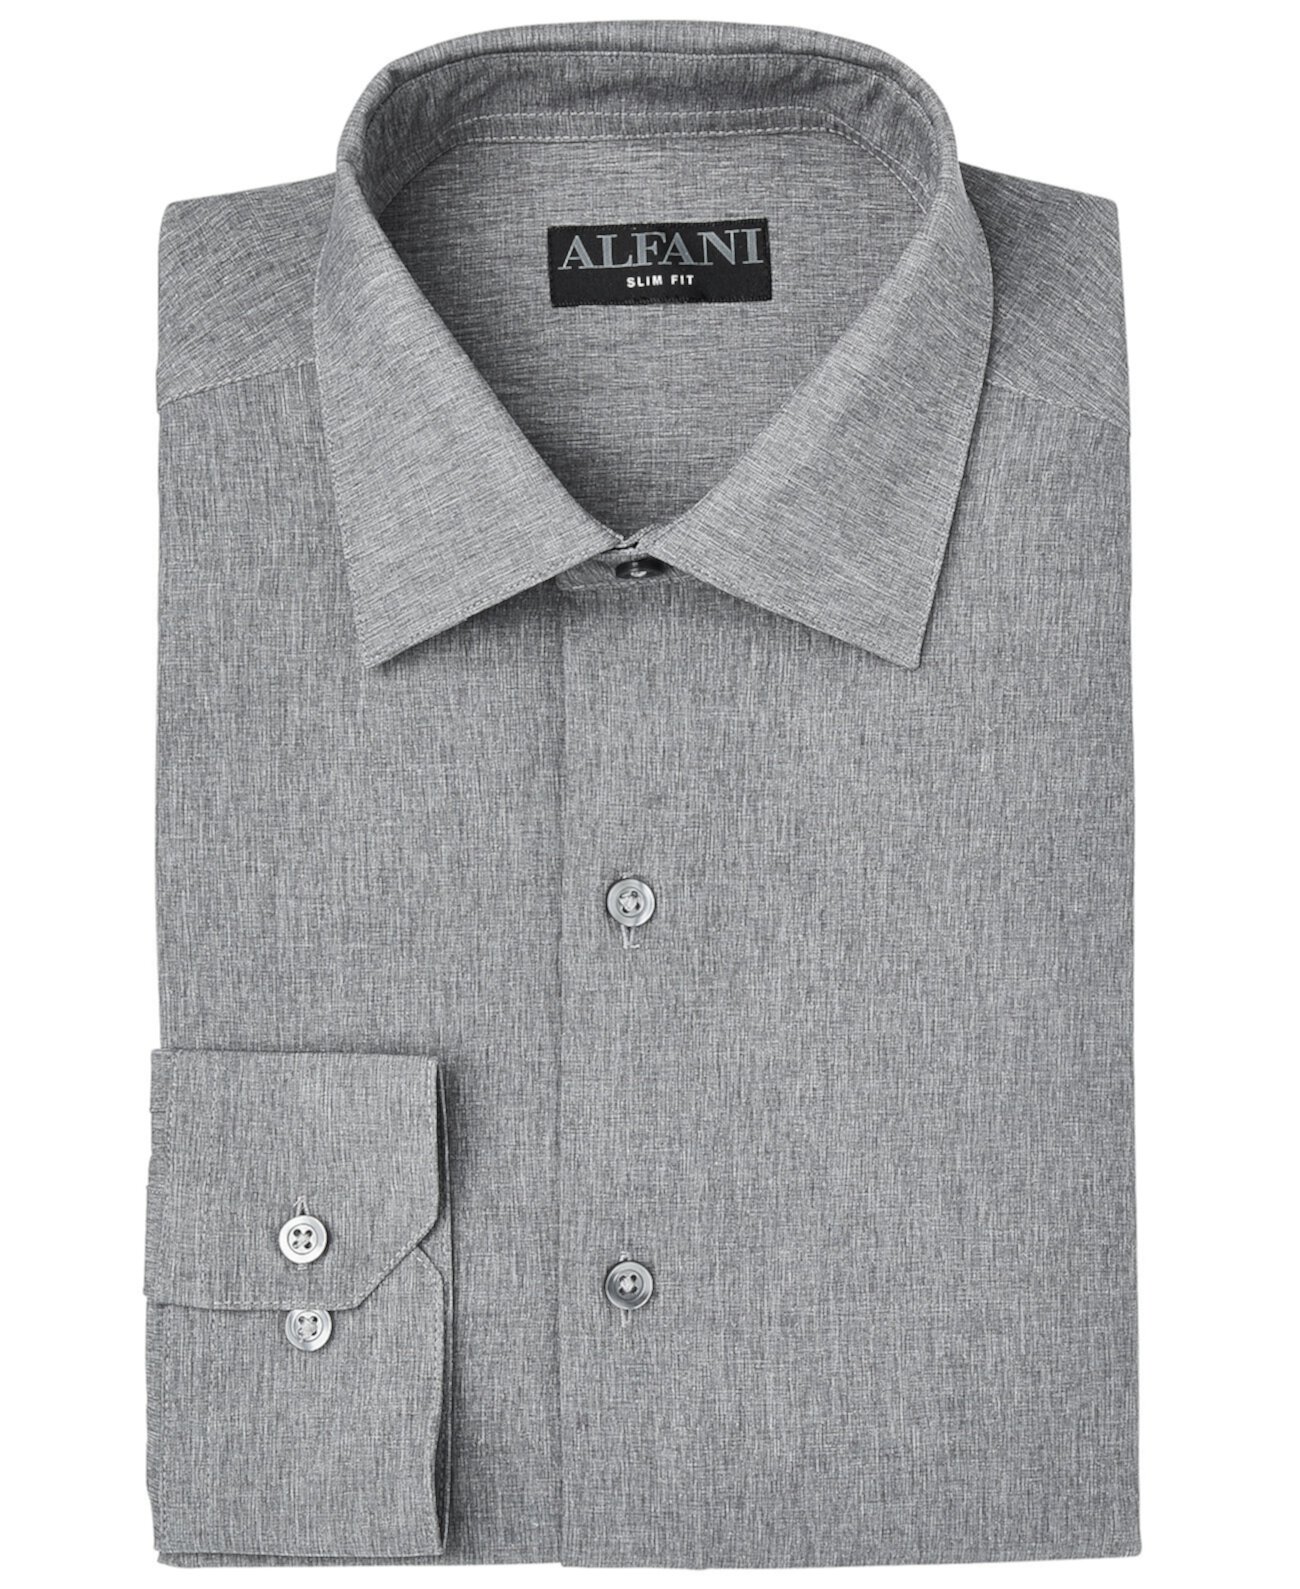 Мужская приталенная классическая рубашка из вереска, созданная для Macy's Alfani